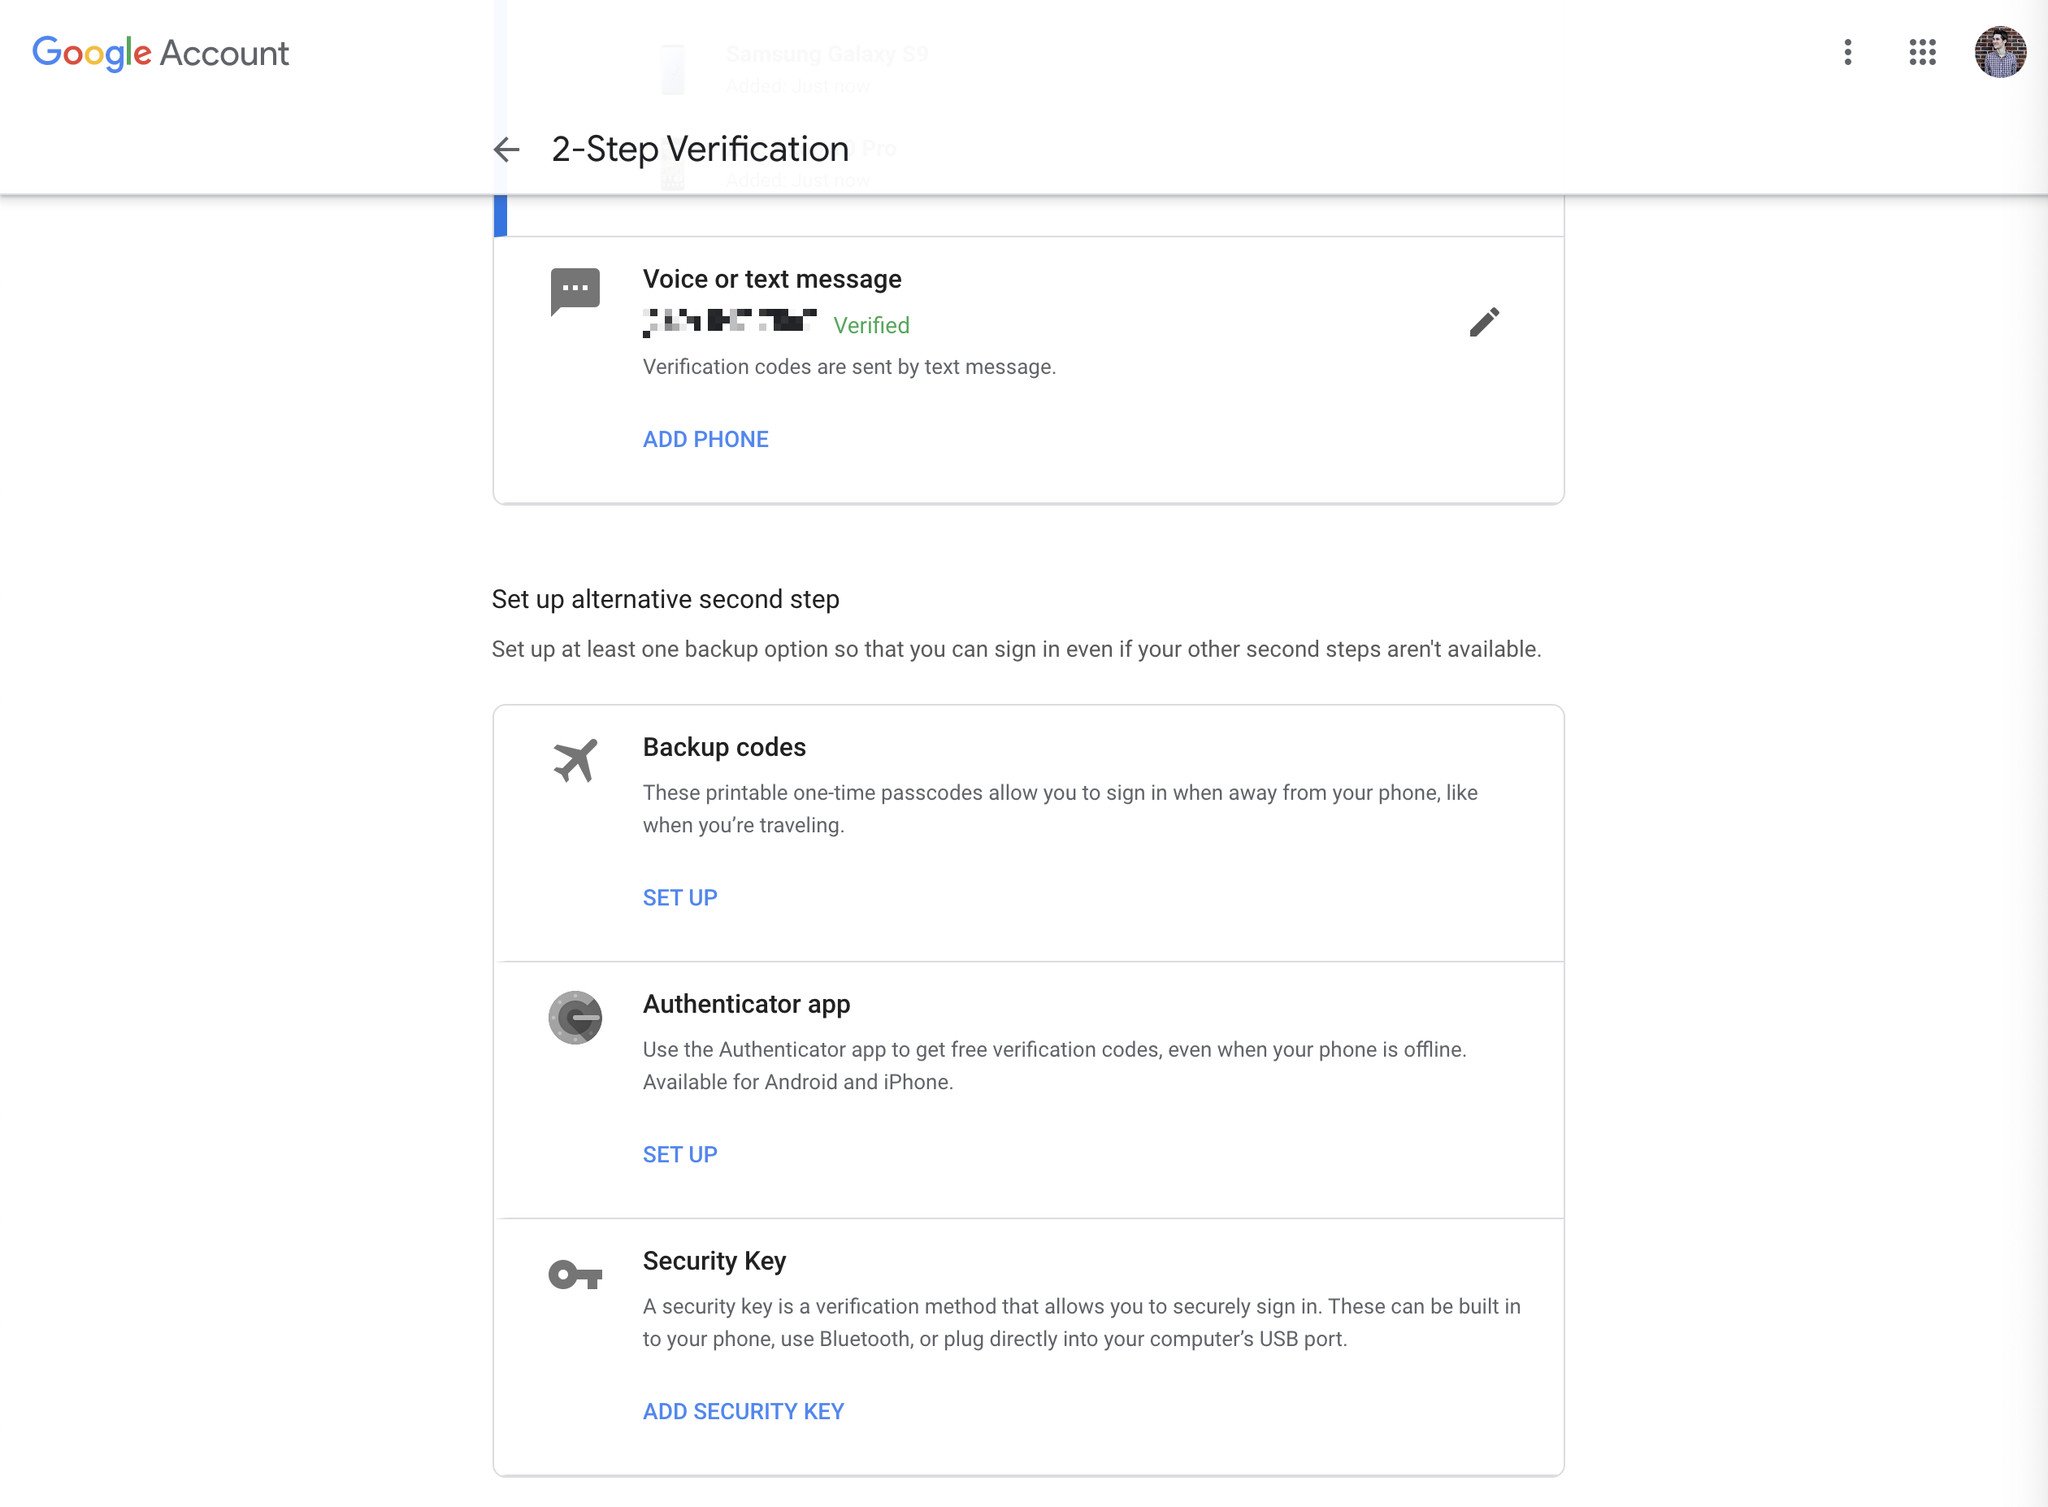 La página de configuración de la verificación en dos pasos de la cuenta de Google, que muestra la opción de la aplicación Authenticator